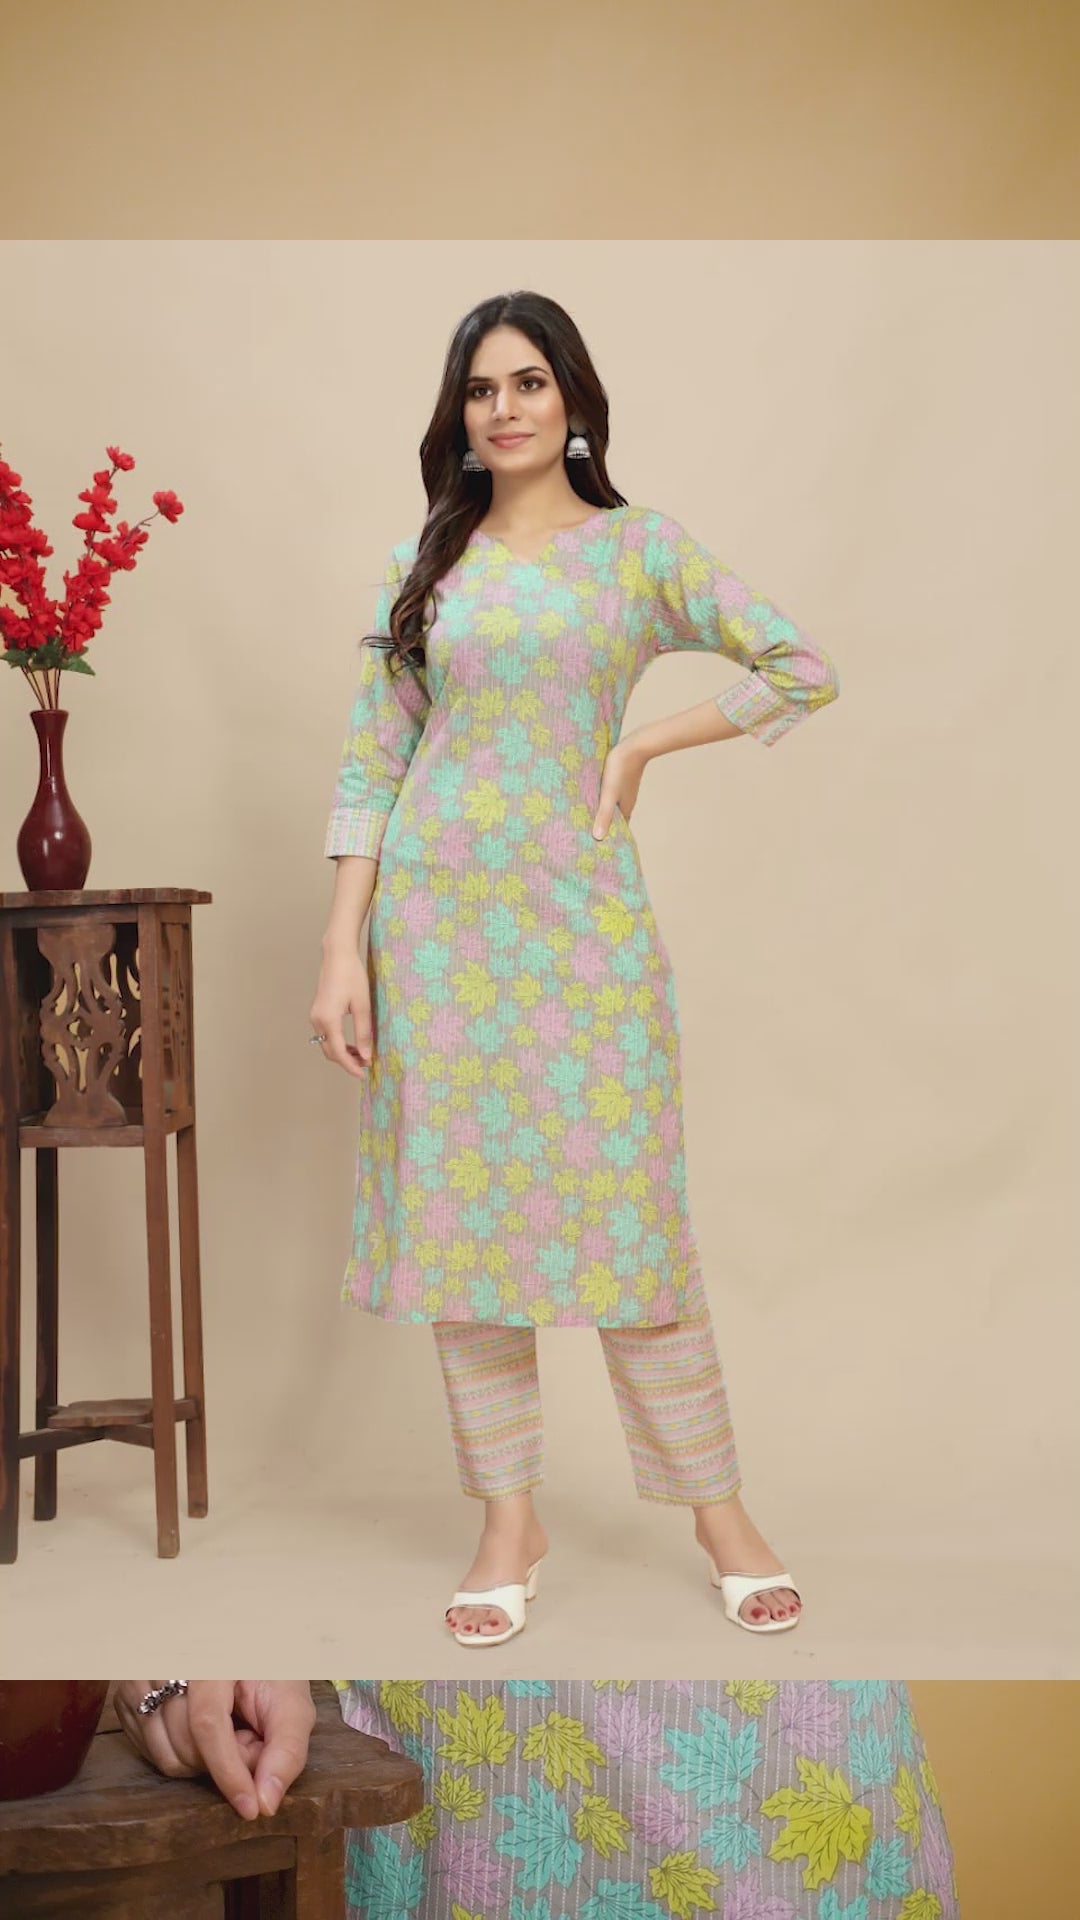 Sleeveless Kurti Design: ये है 5 स्लीवलेस कुर्ती का शानदार कलेक्शन, इनसे  मिलेगी जबर स्टाइल और नहीं आएगा पसीना - sleeveless kurti new design women  must try this summer to look beautiful